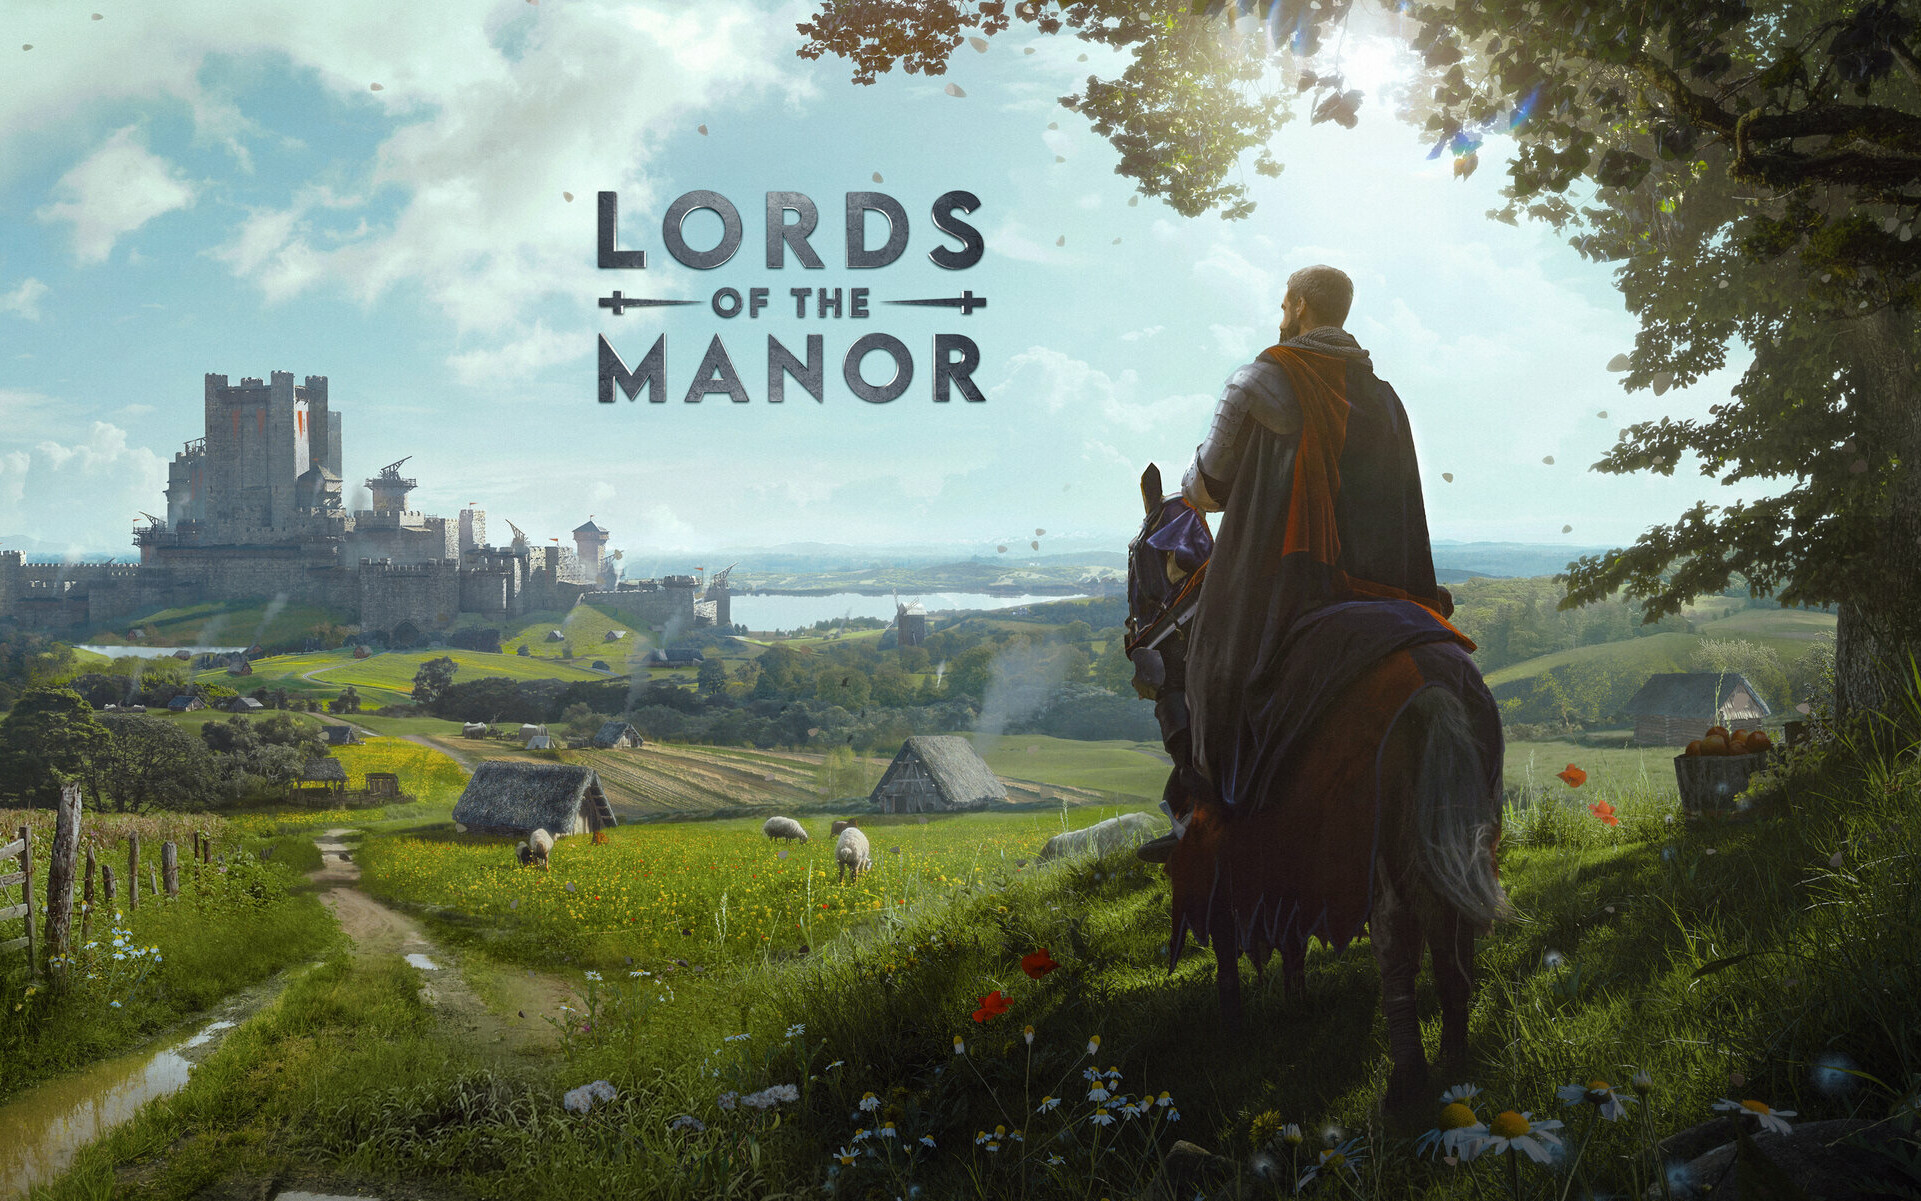 Manor Lords osiągnął niesamowity sukces, przekraczając pierwszy milion sprzedaży w Polsce!